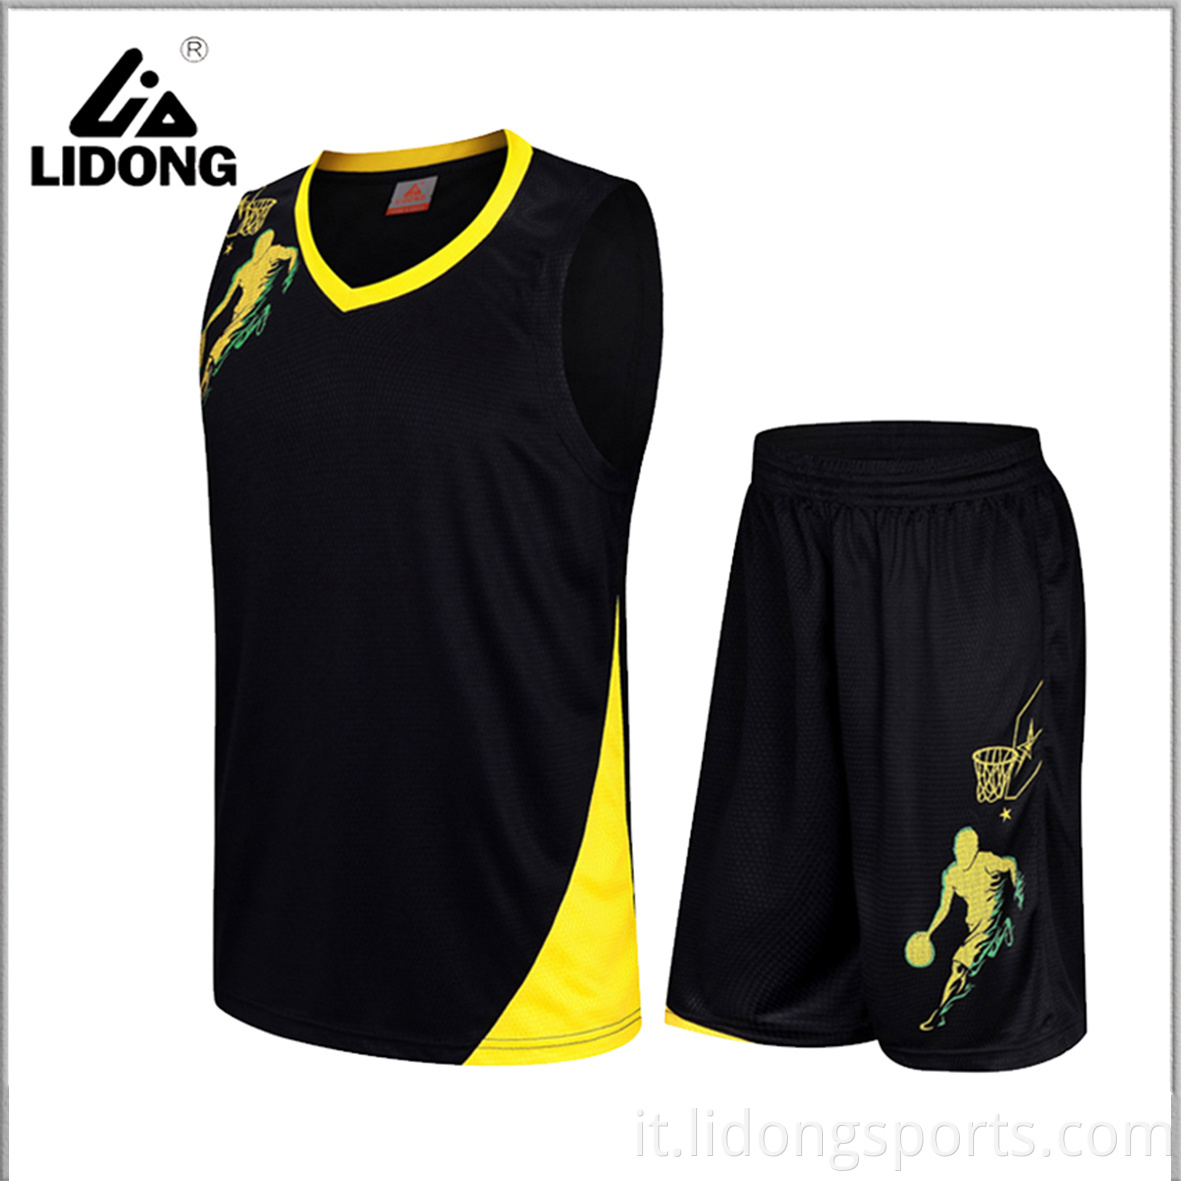 Nuove uniformi di basket all'ingrosso e uniformi da basket per adulti fatti su misura unisex